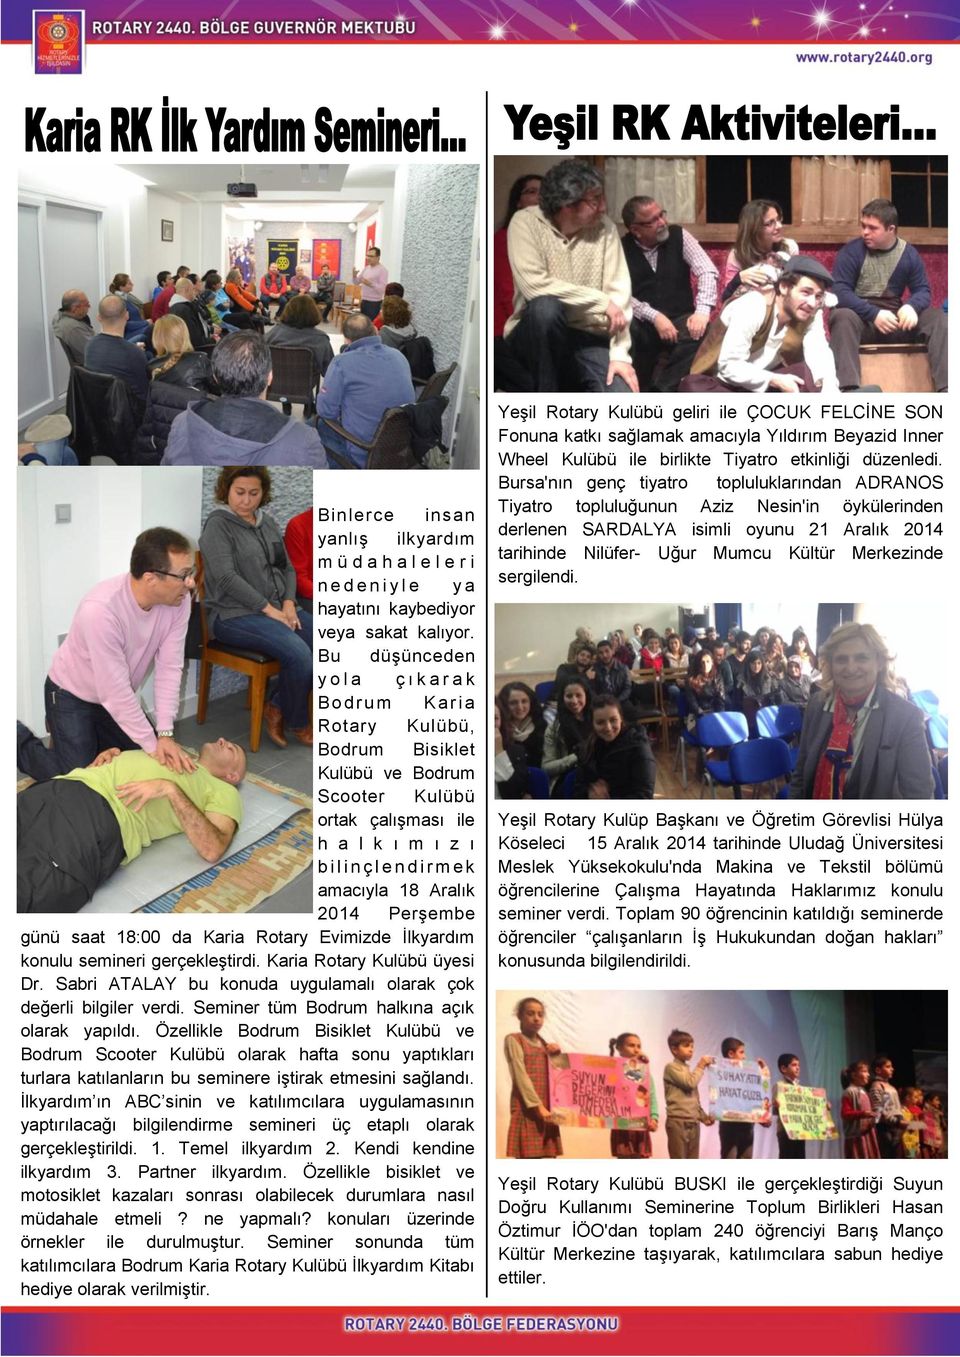 Aralık 2014 Perşembe günü saat 18:00 da Karia Rotary Evimizde İlkyardım konulu semineri gerçekleştirdi. Karia Rotary Kulübü üyesi Dr.